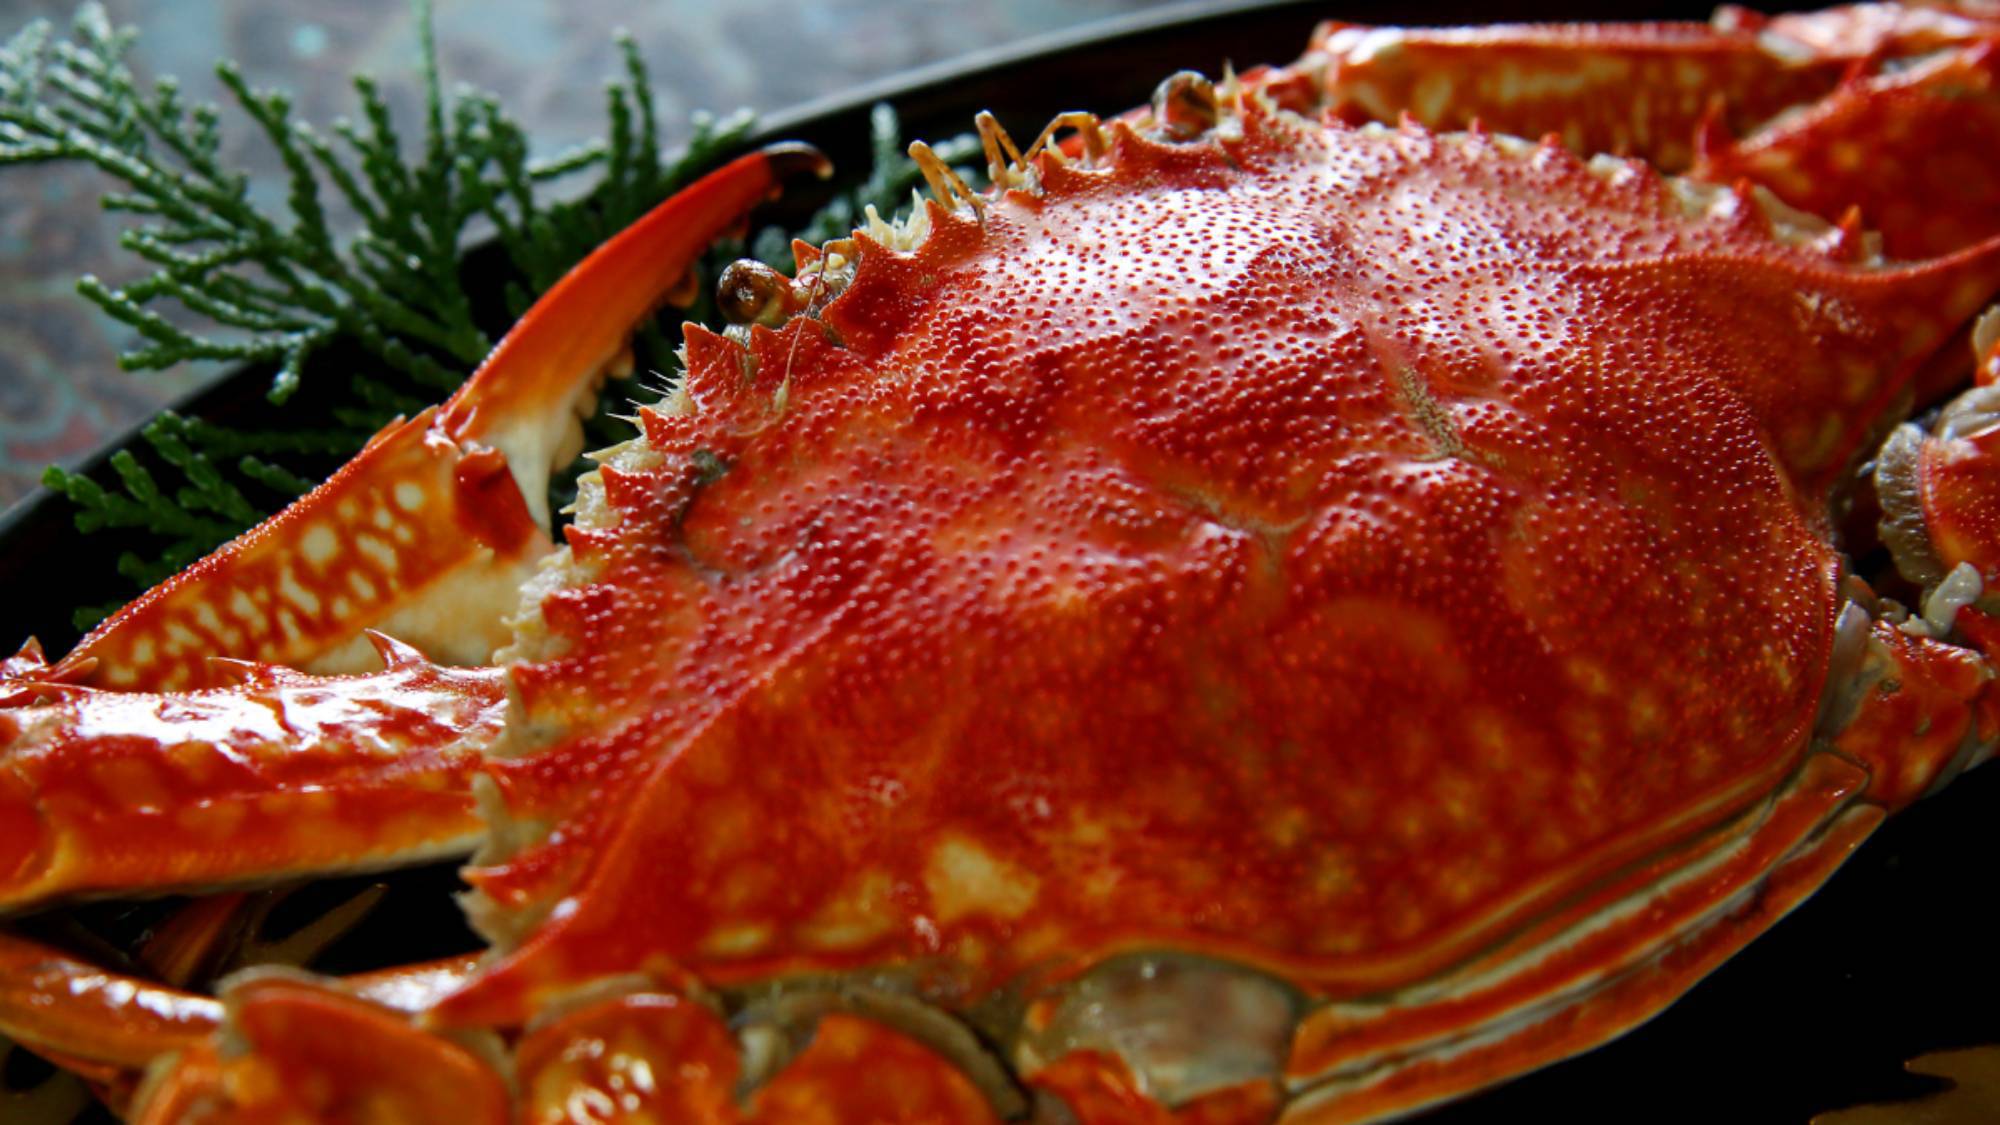 ・【お料理イメージ】鮮度の高い蟹